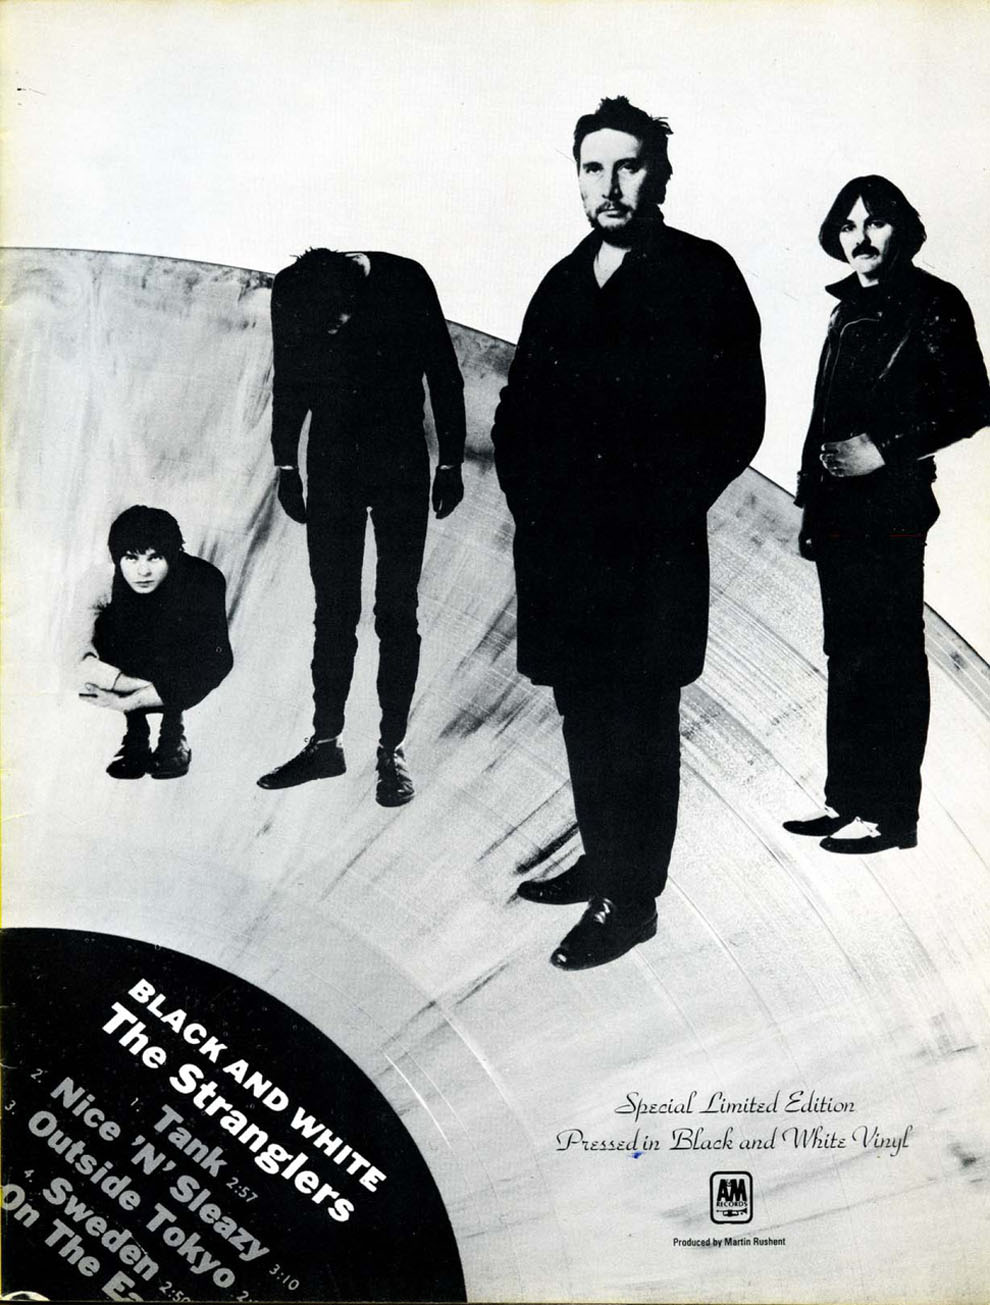 The Stranglers - Black & White Vinyl A&M Ad